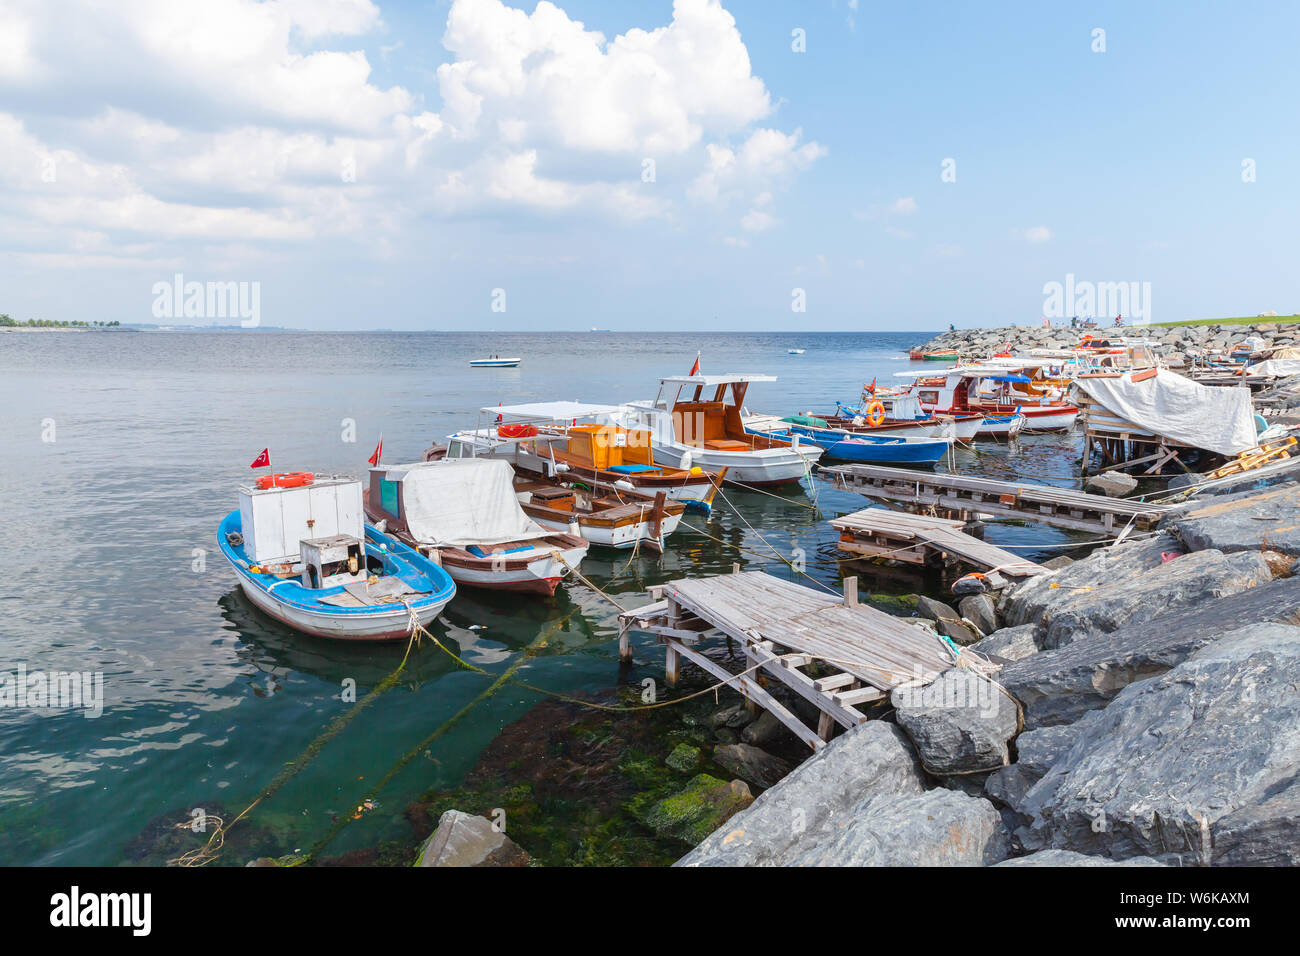 Pequeños botes de madera están amarrados en el puerto de Avcilar, distrito de Estambul, Turquía Foto de stock